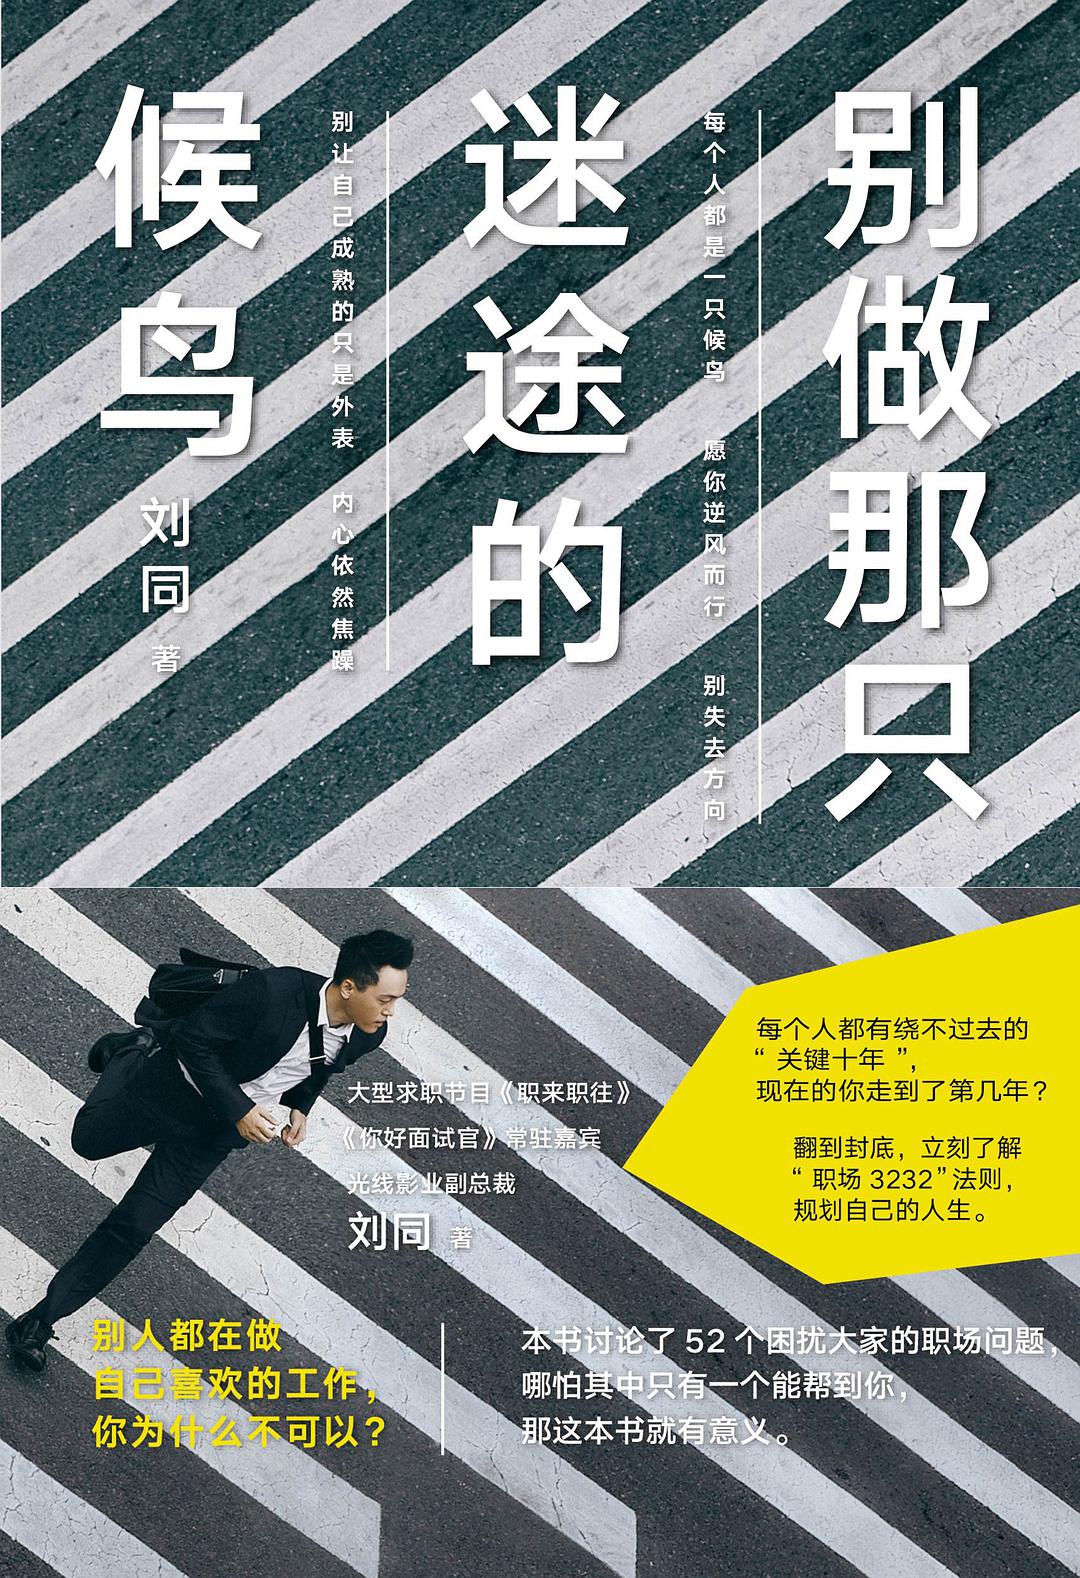 刘同《谁的青春不迷茫》新版发售 共赴十年之约-瓯越读客-温州网